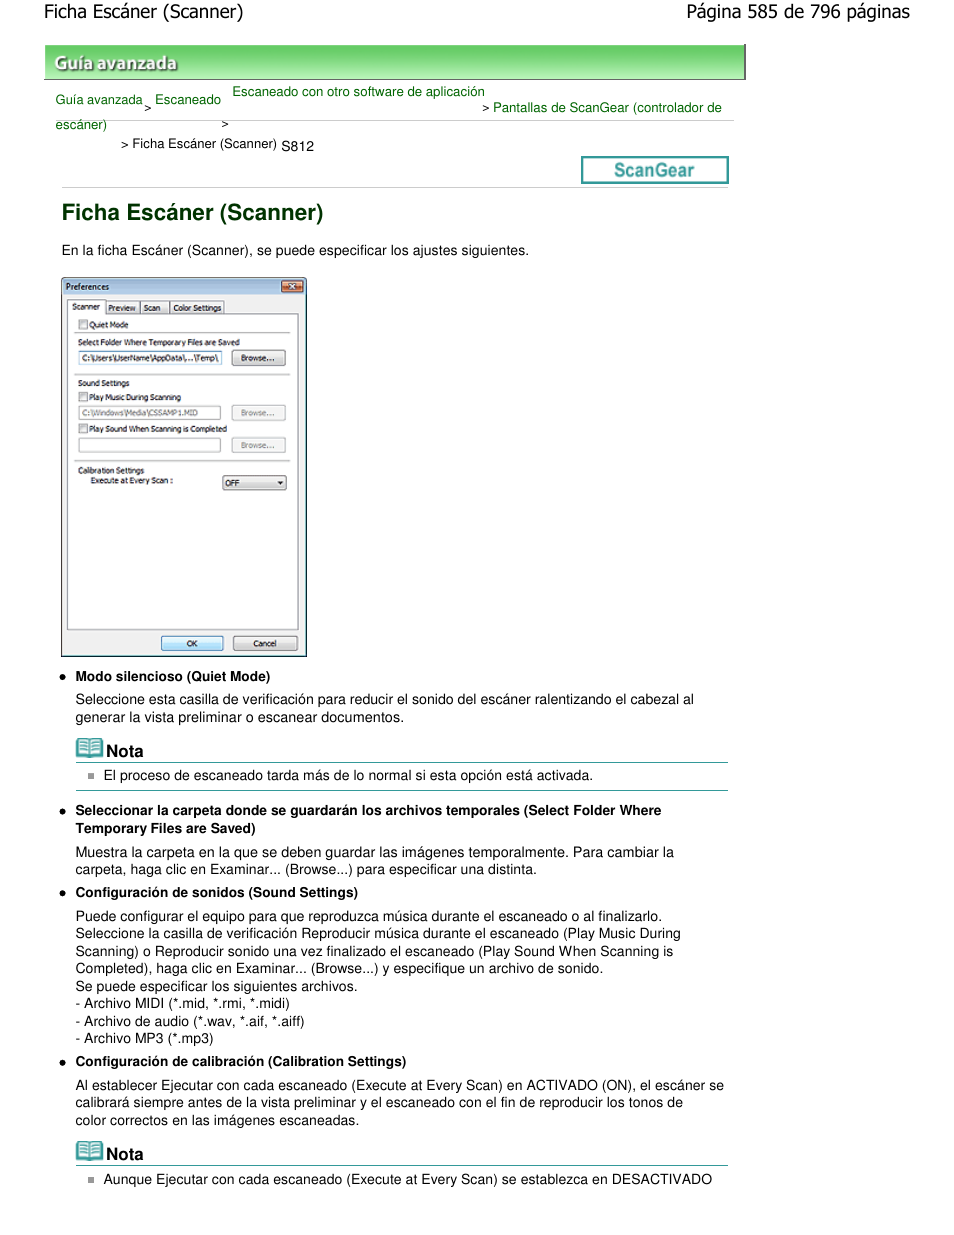 Ficha escáner (scanner) | Canon mp495 Manual del usuario | Página 585 / 796